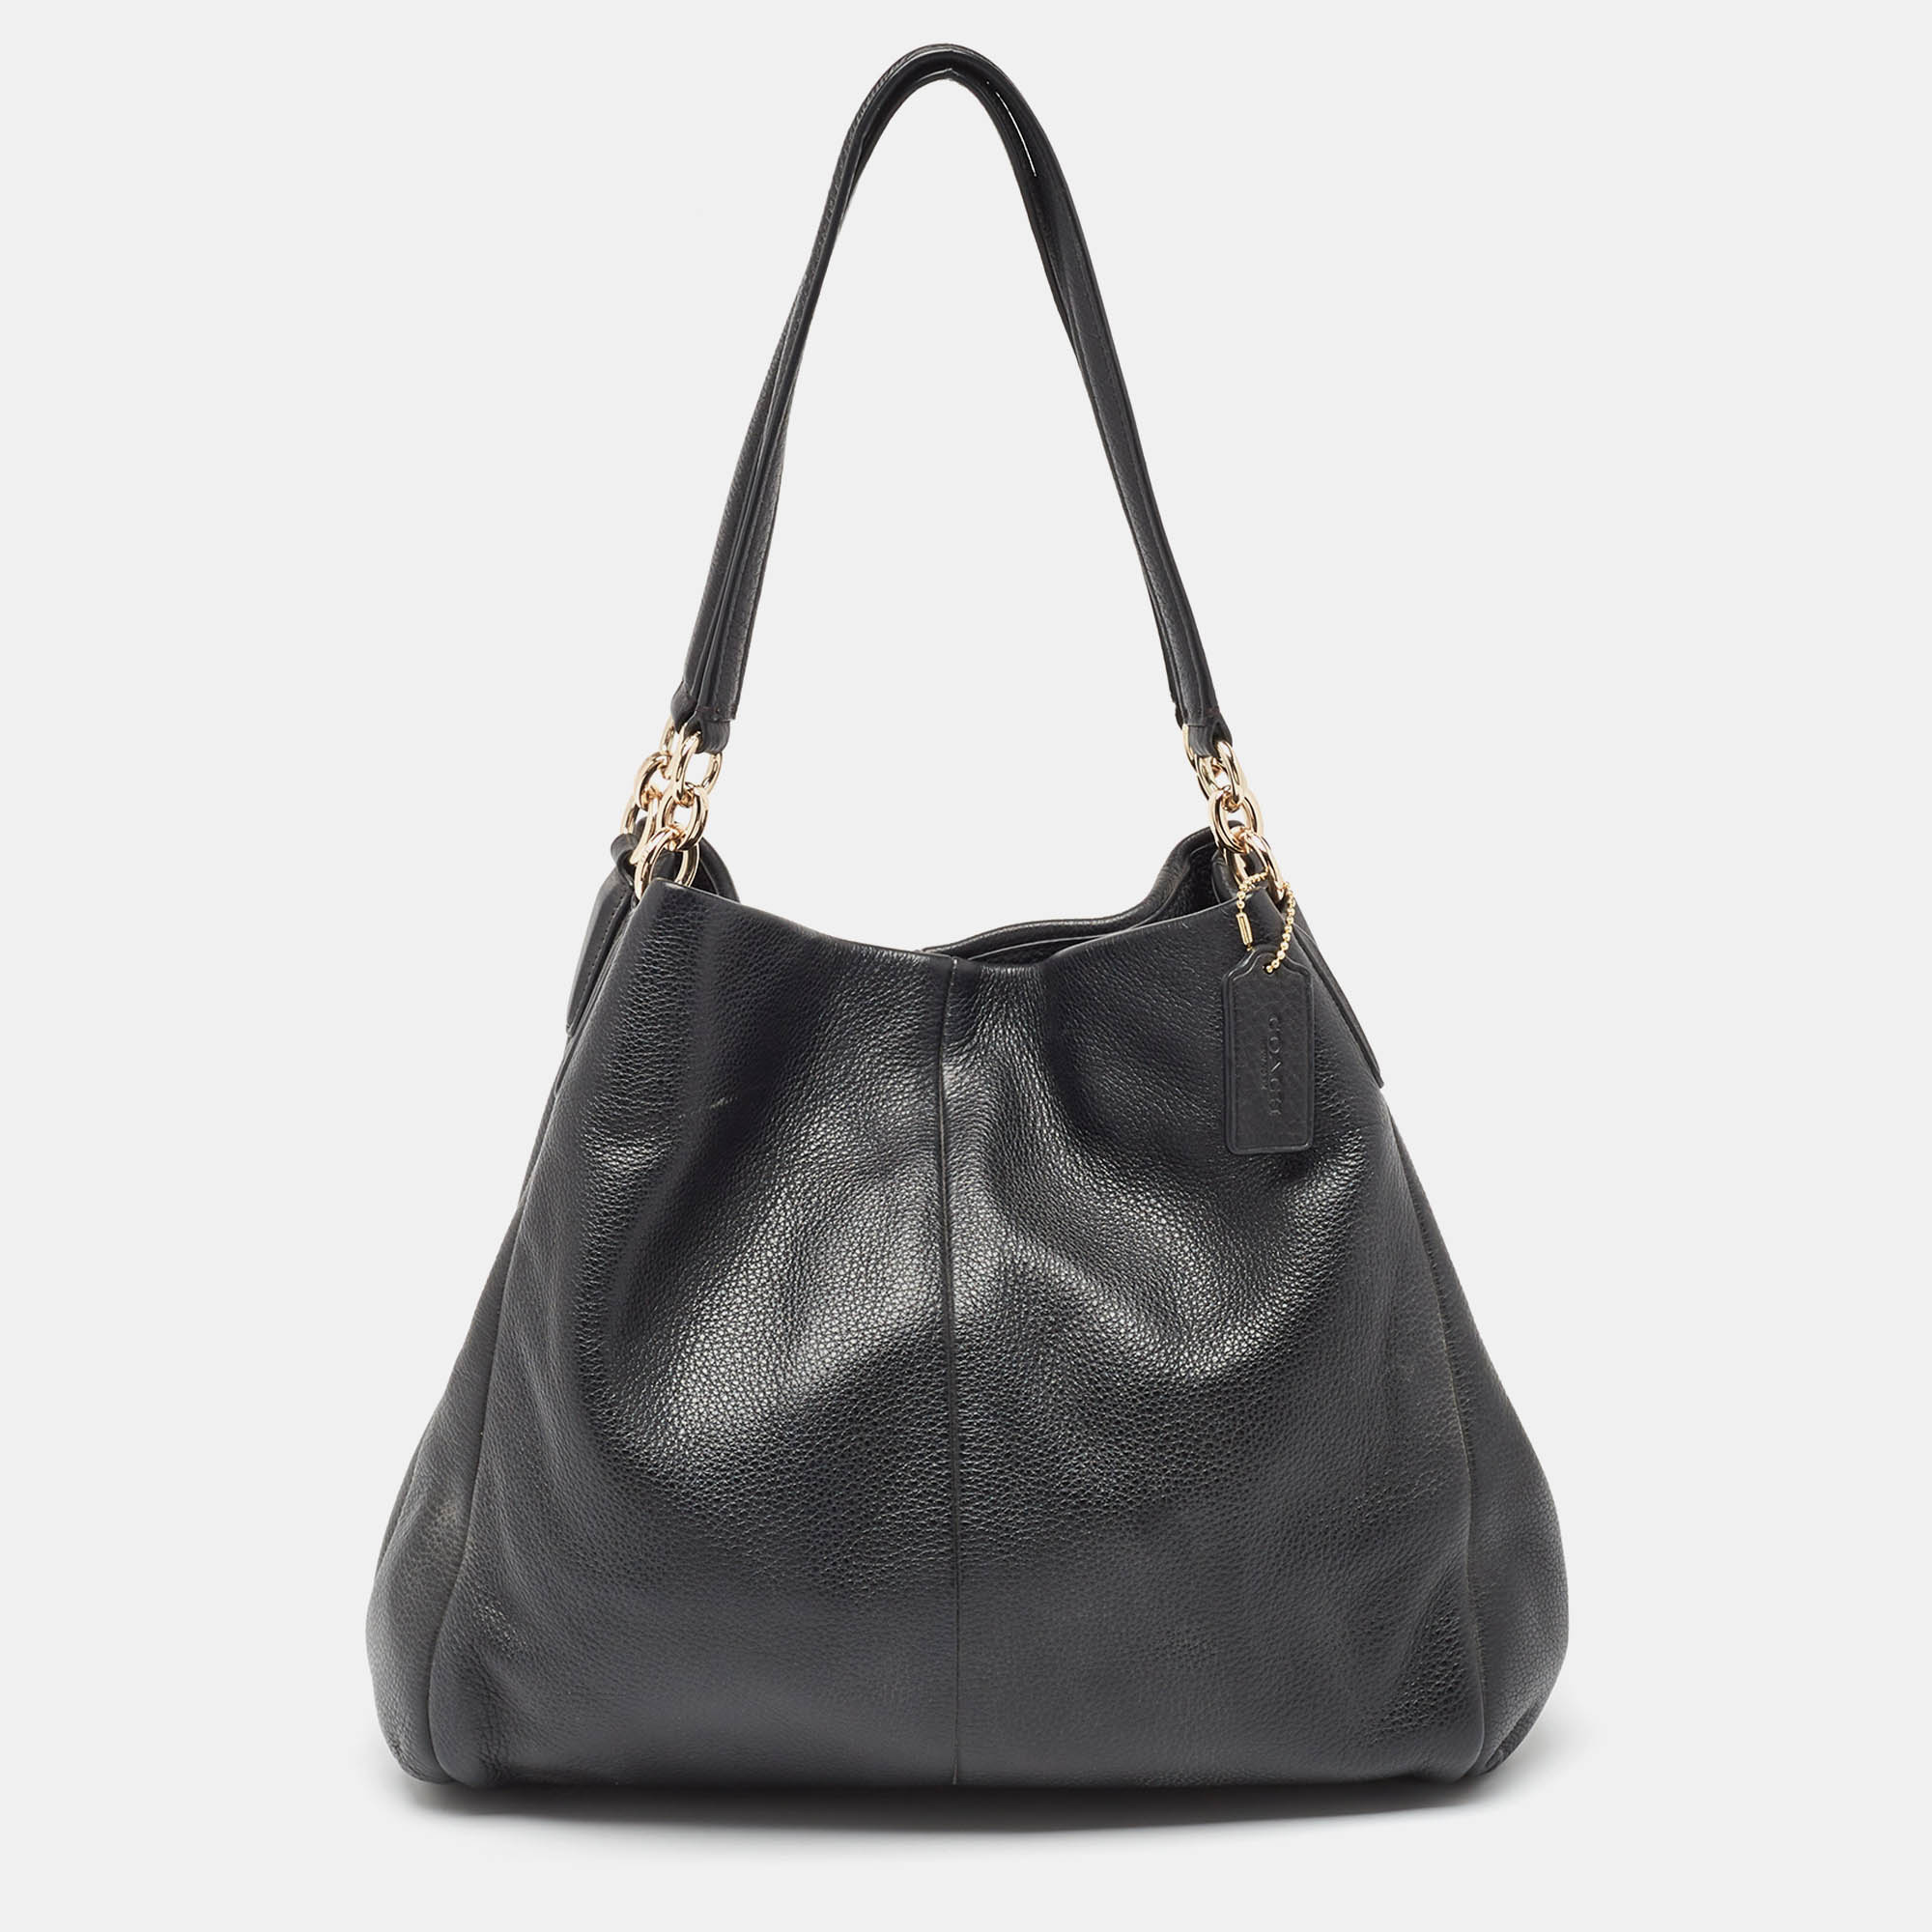 Coach black leather phoebe madison shoulder bag